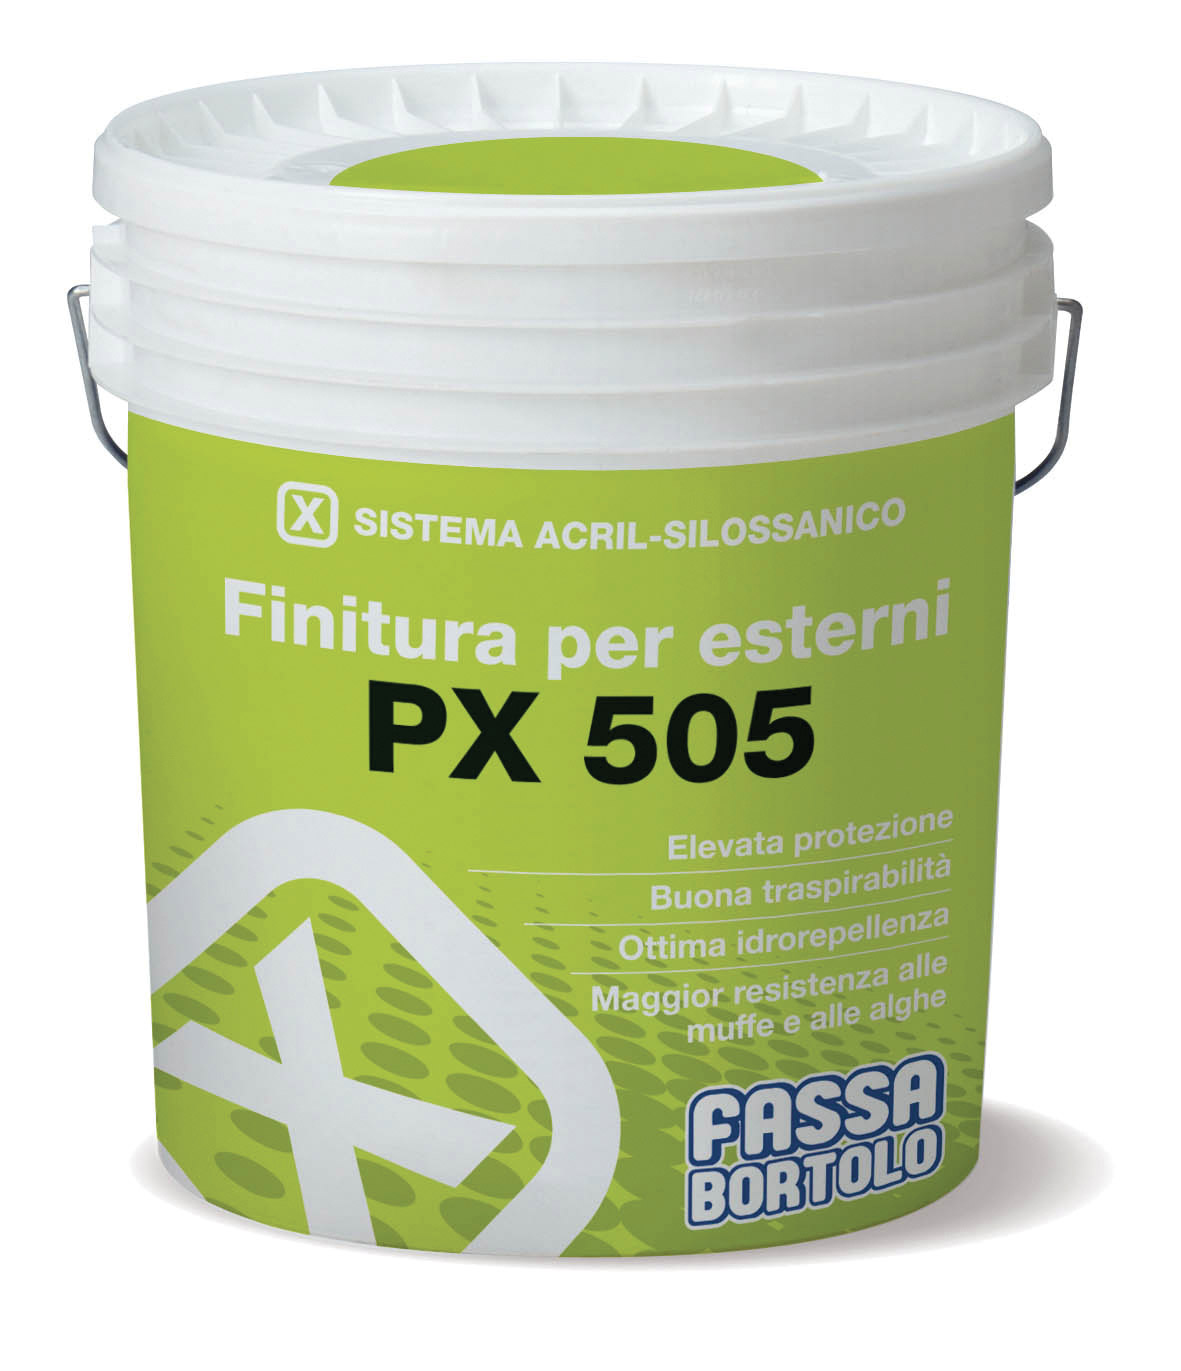 PX 505: Acrylic-siloxane filling finish